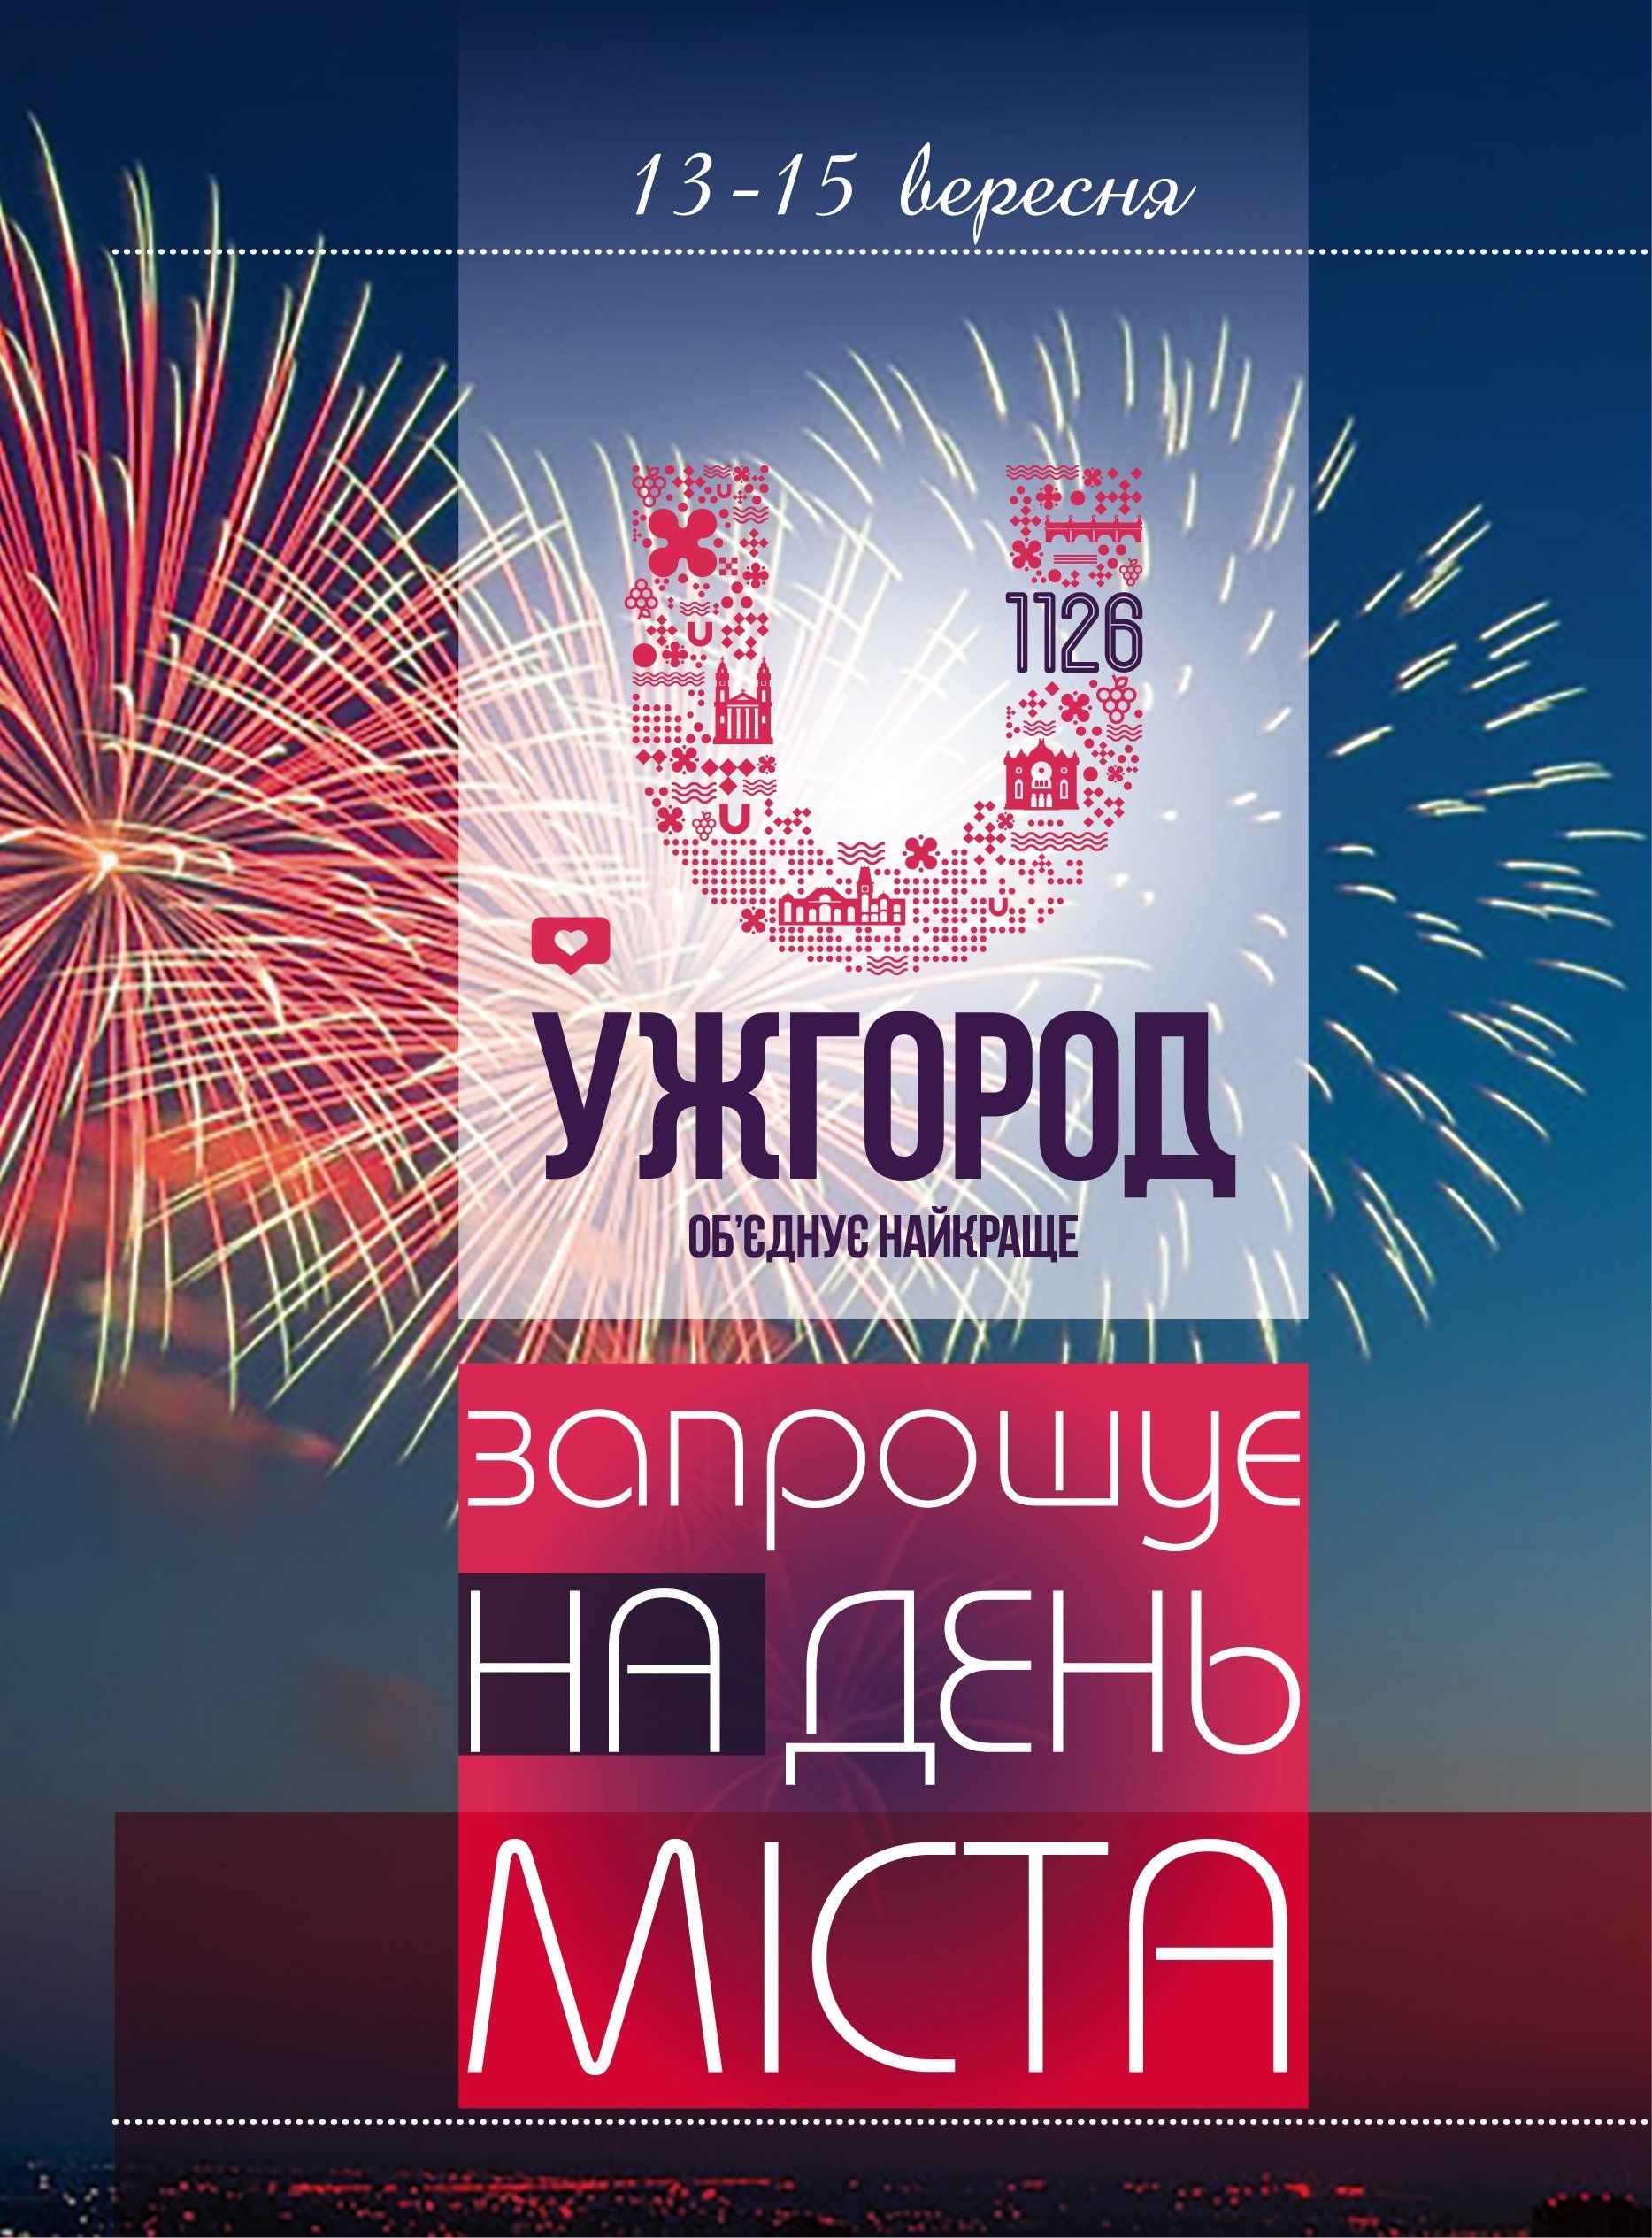 13–15 вересня Ужгород відзначатиме свій 1126-й День народження